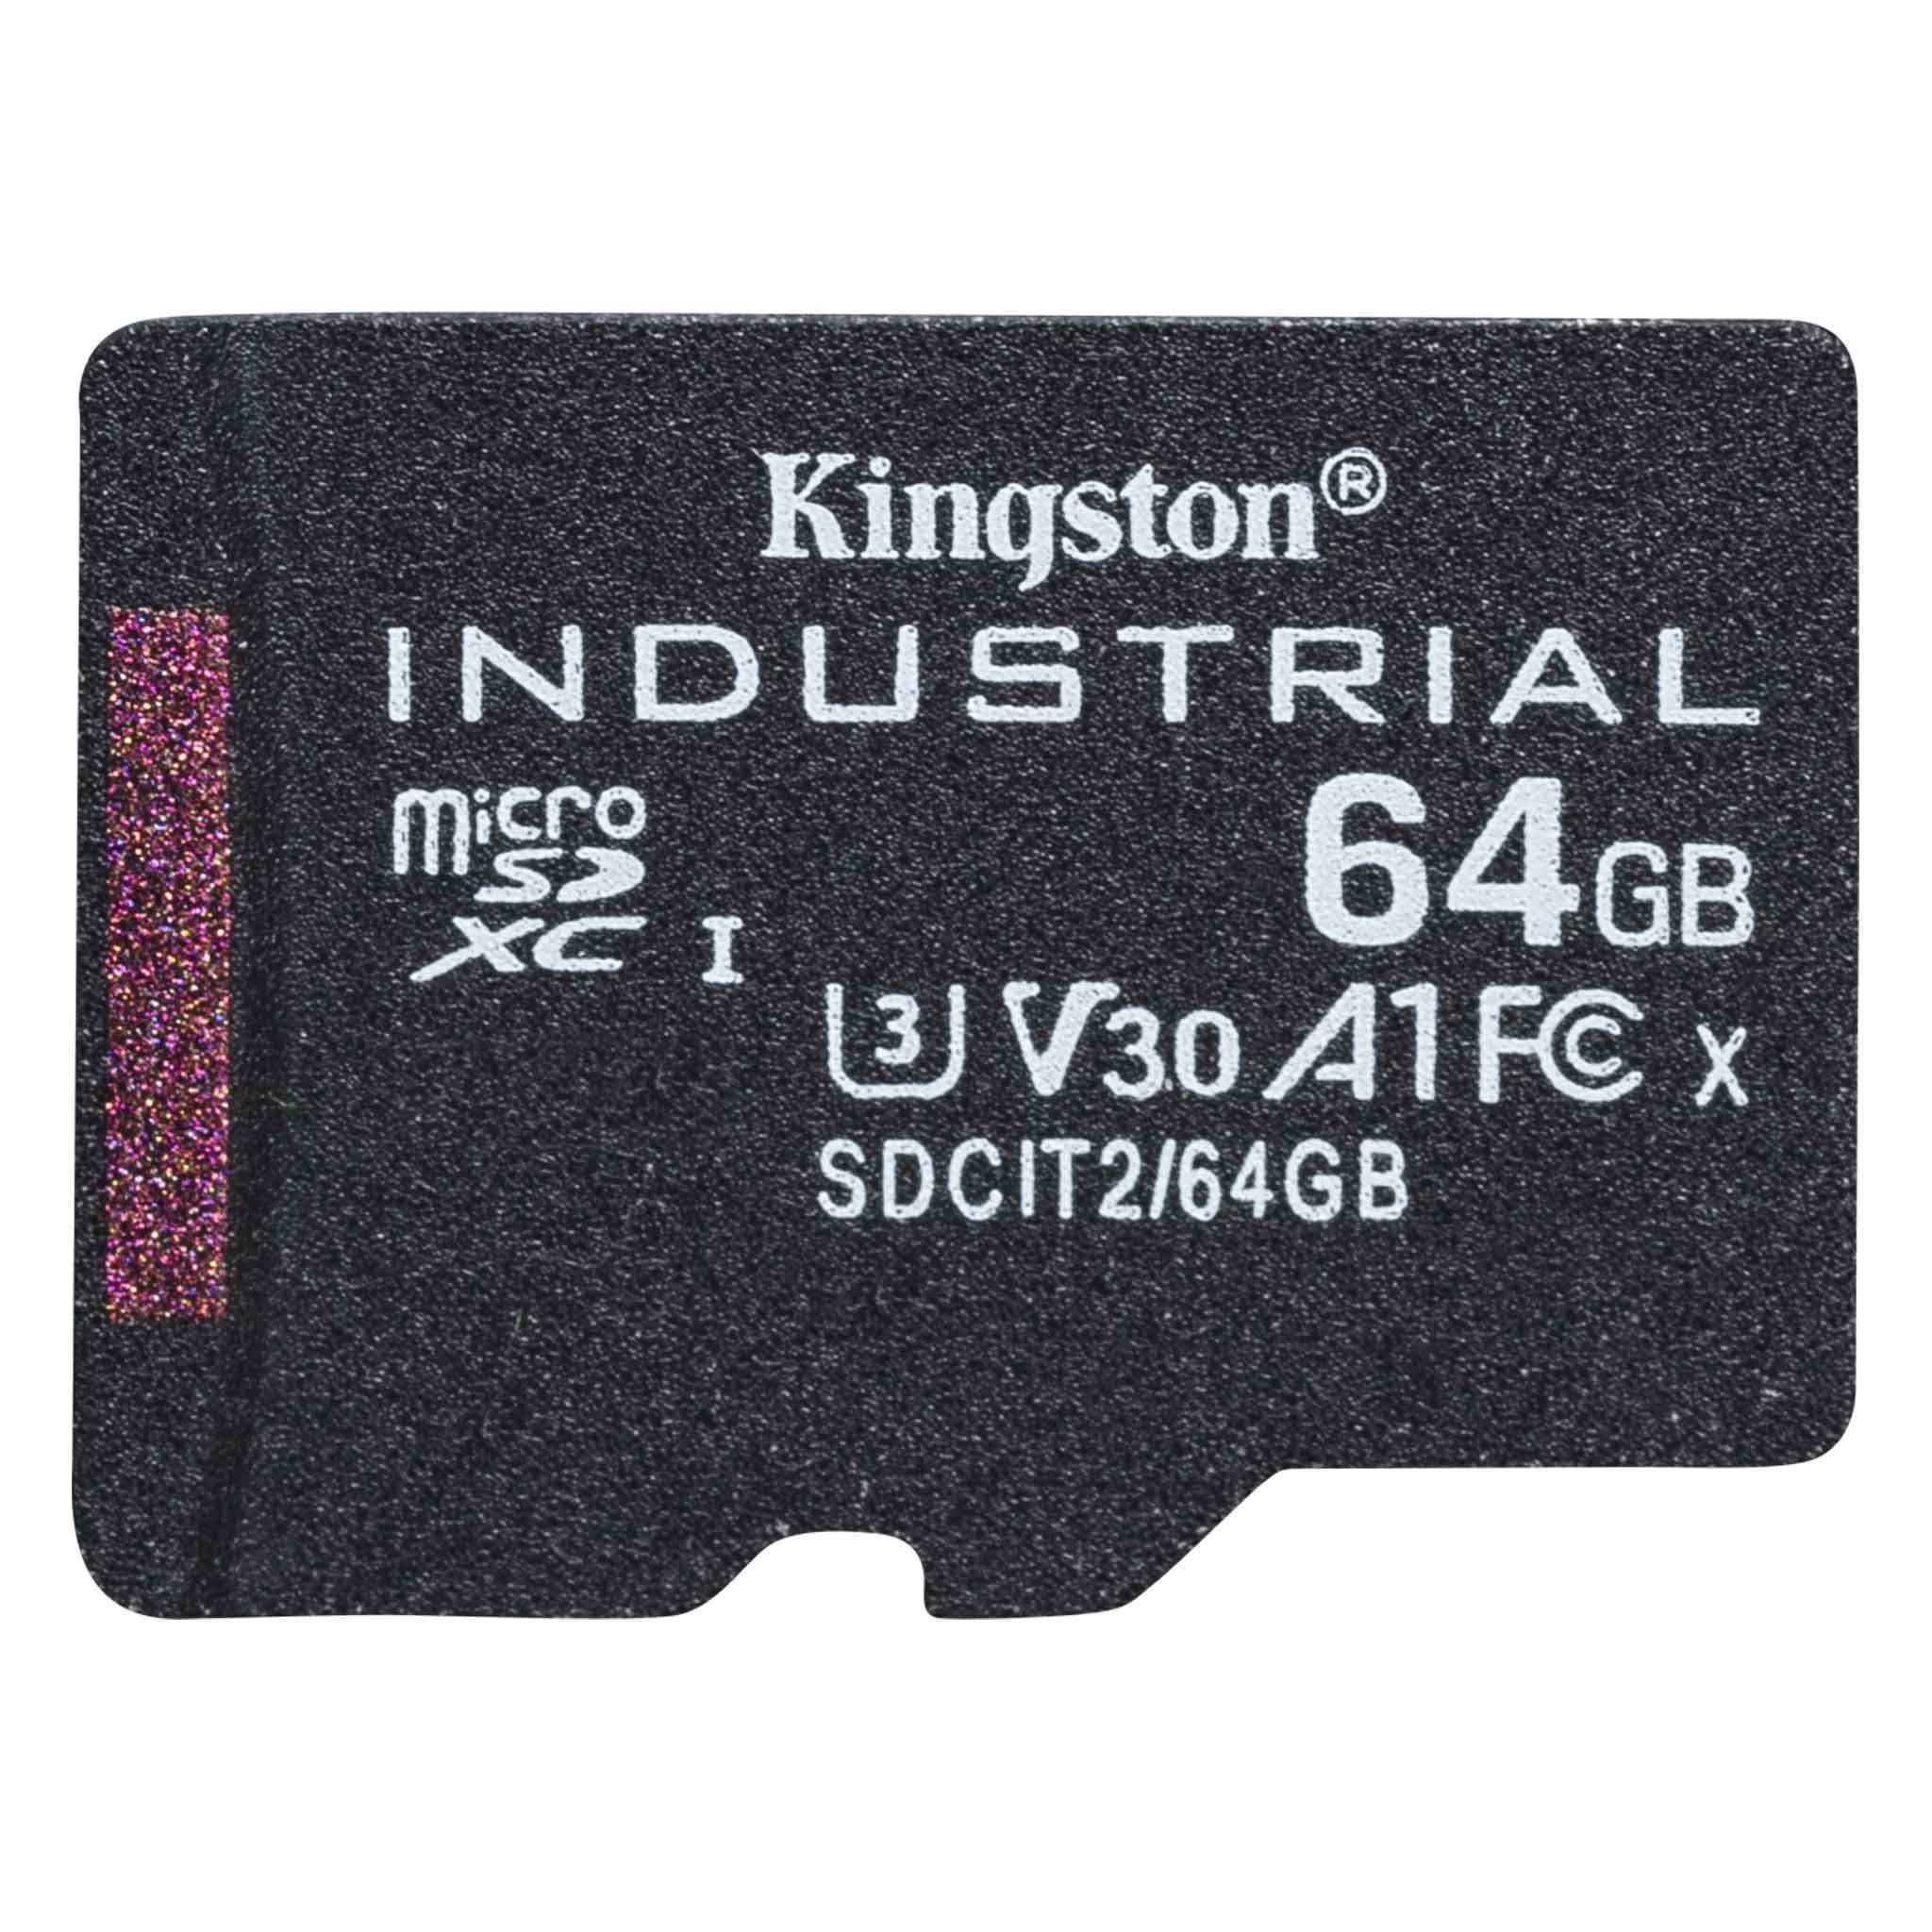 Kingston Industrial